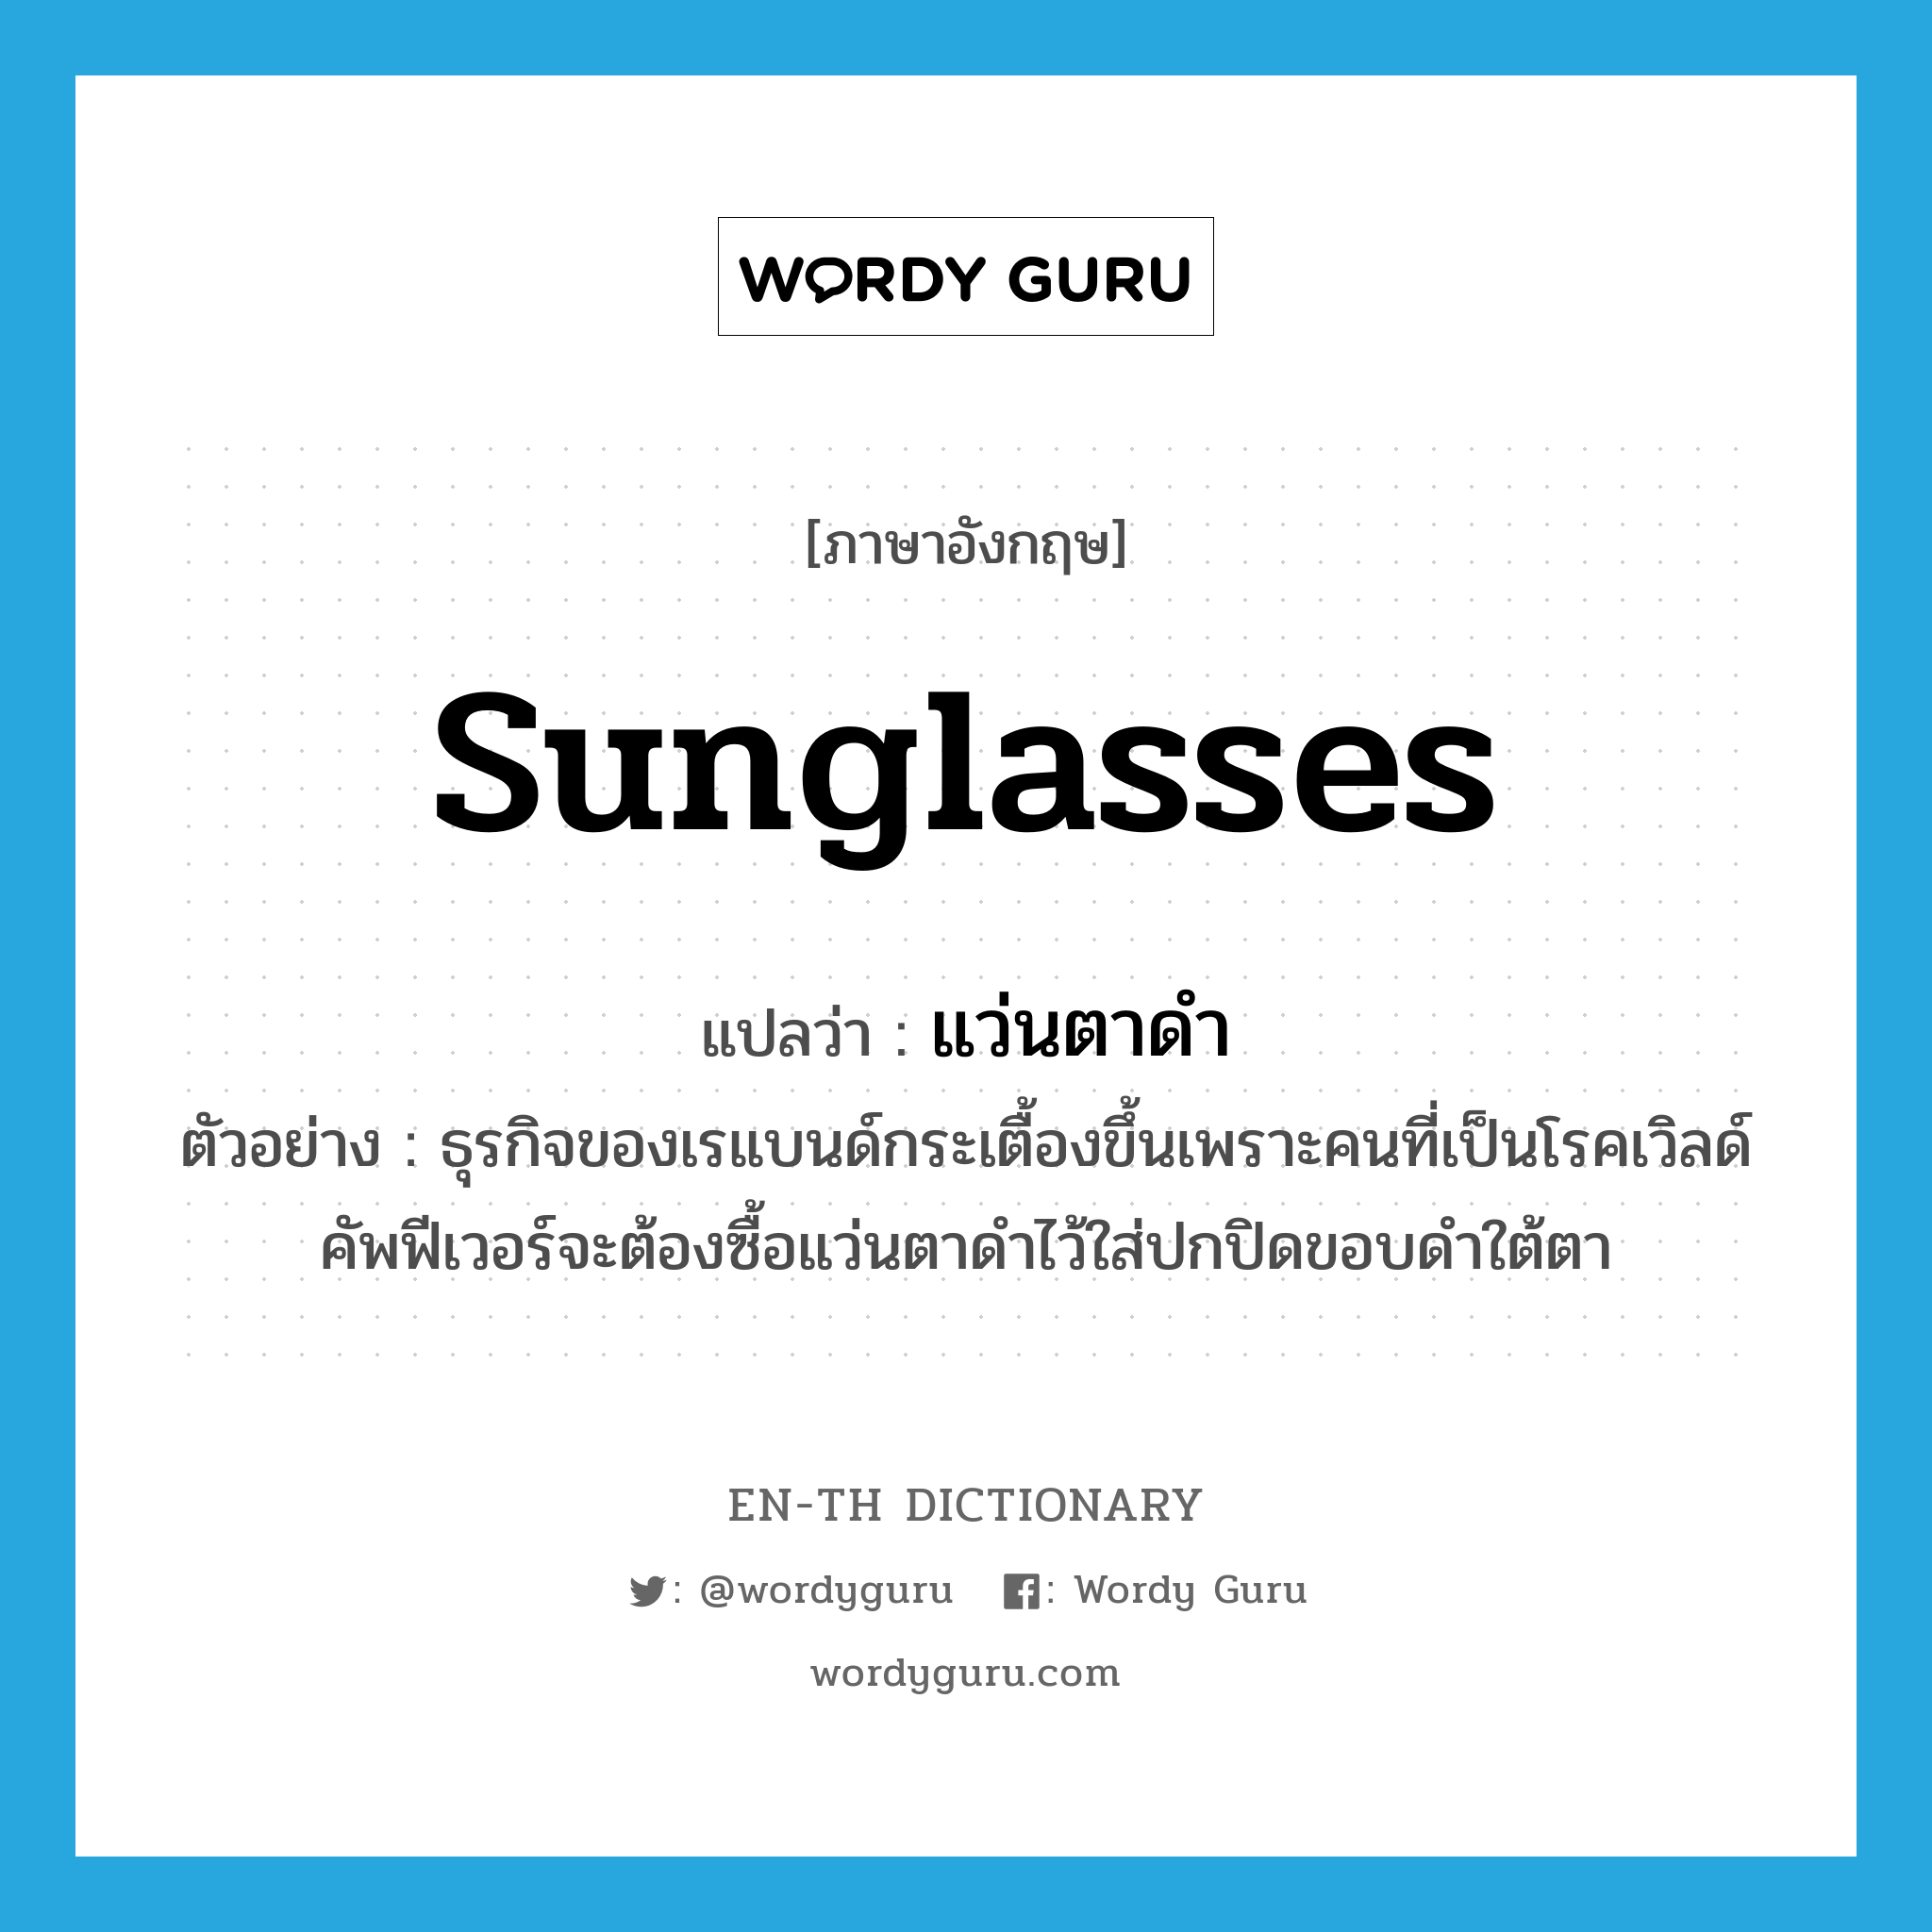 sunglasses แปลว่า?, คำศัพท์ภาษาอังกฤษ sunglasses แปลว่า แว่นตาดำ ประเภท N ตัวอย่าง ธุรกิจของเรแบนด์กระเตื้องขึ้นเพราะคนที่เป็นโรคเวิลด์คัพฟีเวอร์จะต้องซื้อแว่นตาดำไว้ใส่ปกปิดขอบดำใต้ตา หมวด N